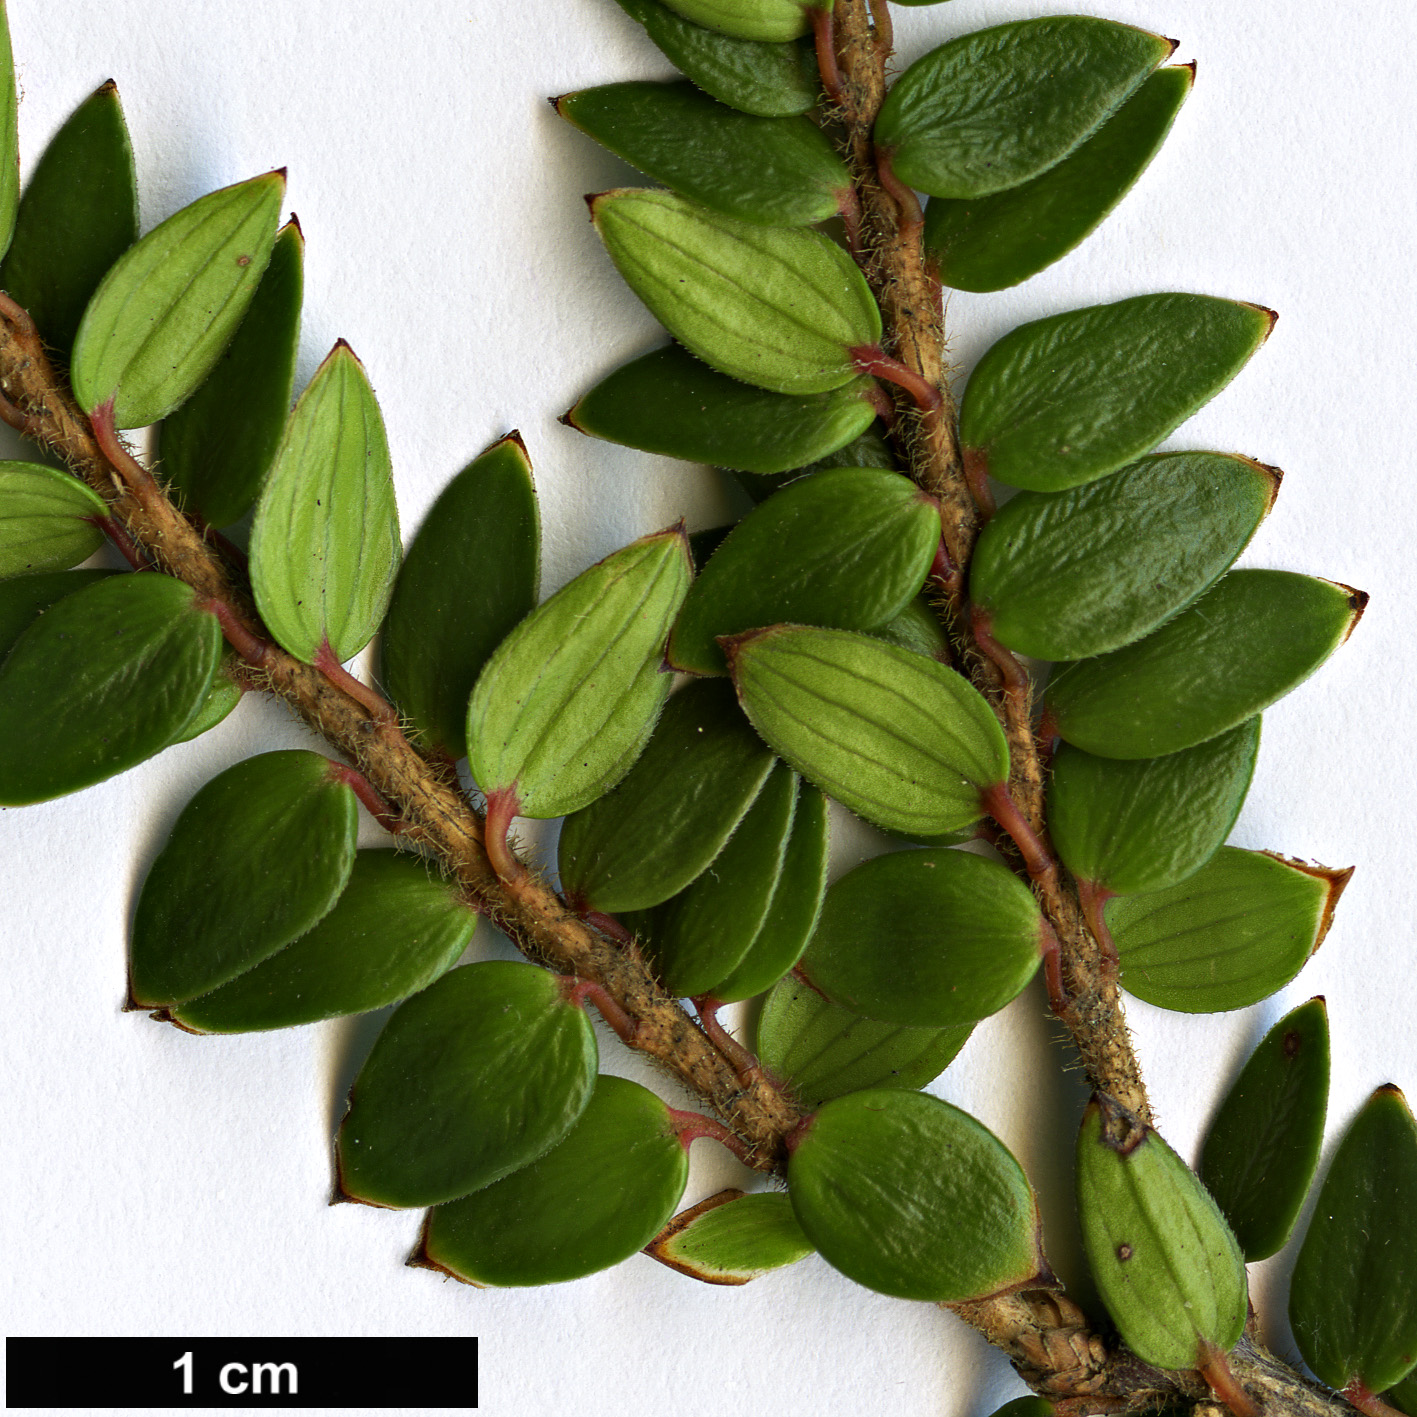 High resolution image: Family: Ericaceae - Genus: Trochocarpa - Taxon: cunninghammi